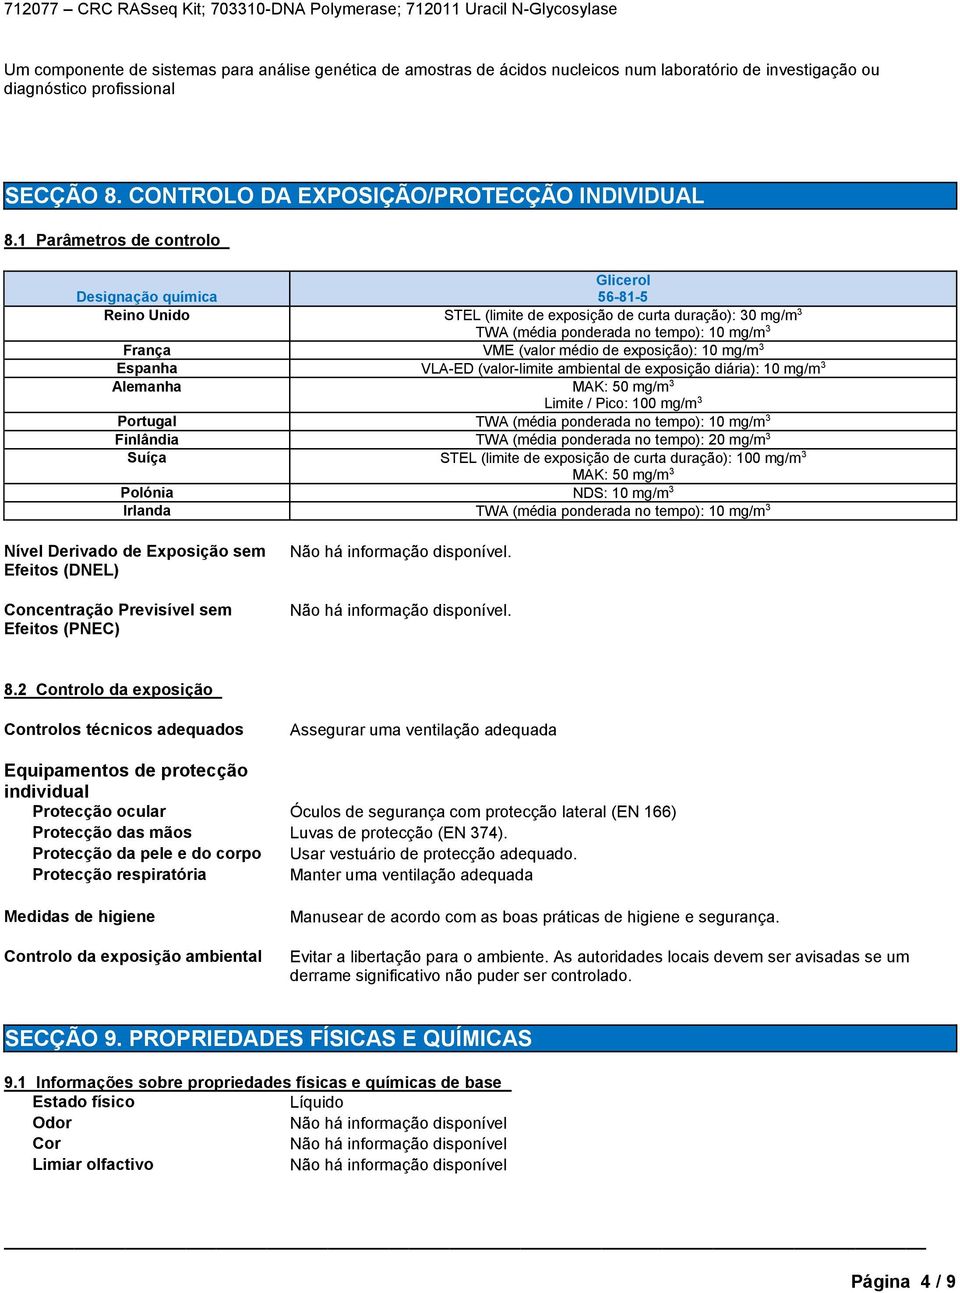 exposição): 10 mg/m 3 Espanha VLA-ED (valor-limite ambiental de exposição diária): 10 mg/m 3 Alemanha MAK: 50 mg/m 3 Limite / Pico: 100 mg/m 3 Portugal TWA (média ponderada no tempo): 10 mg/m 3